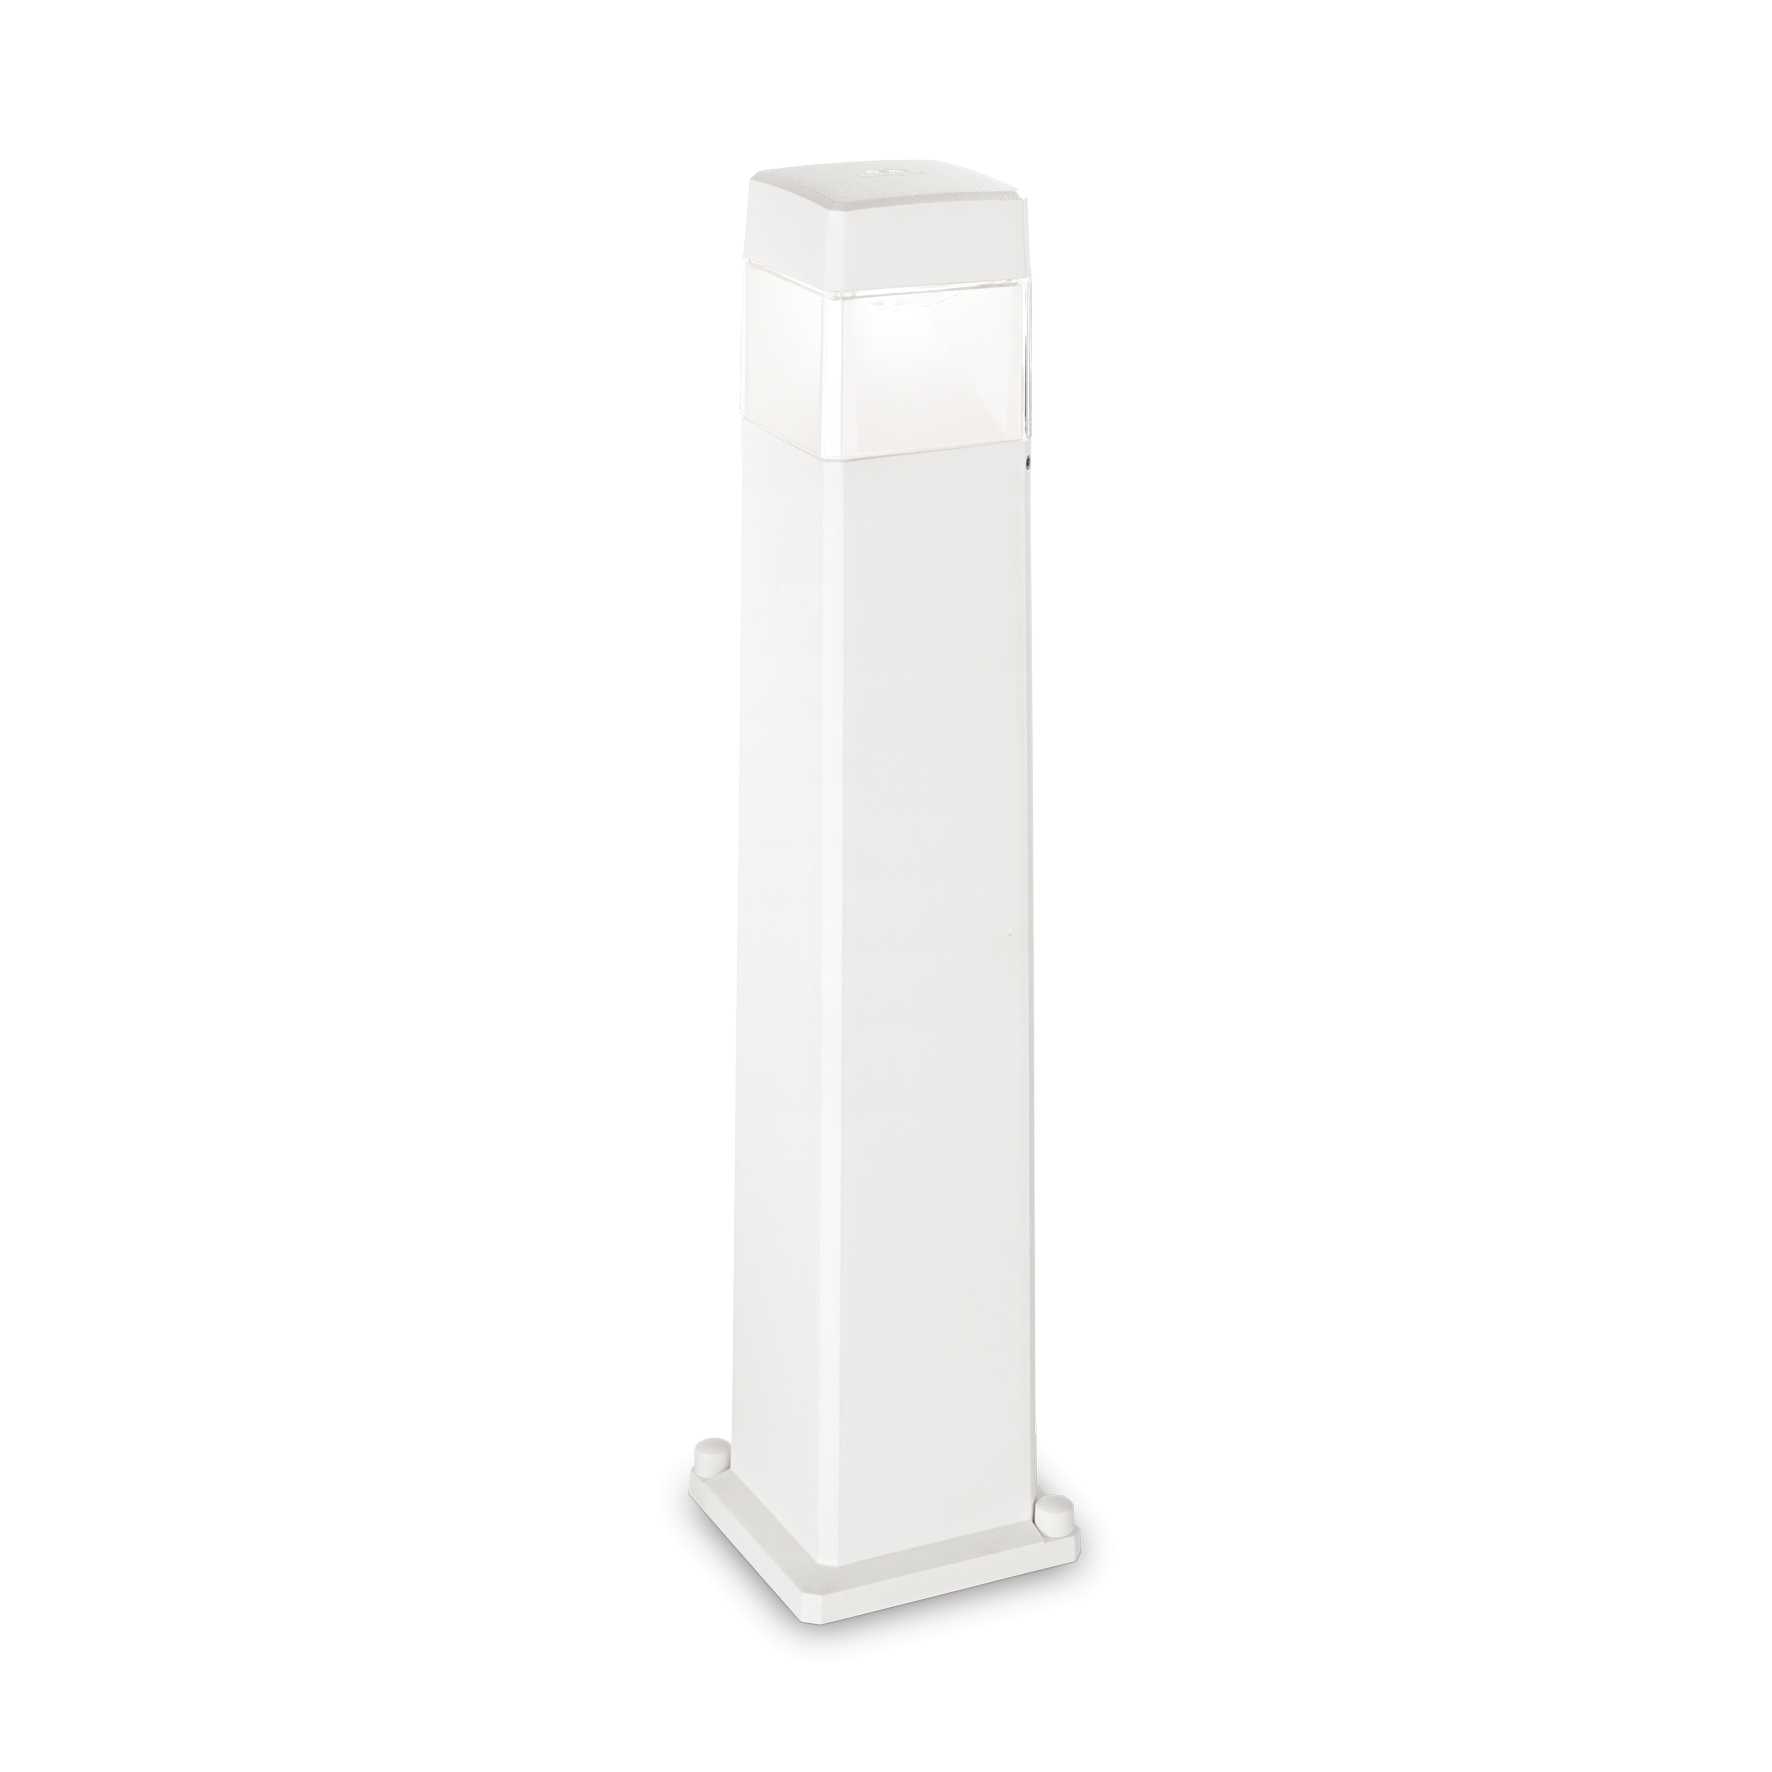 AD hotelska oprema Vanjska podna lampa Cosmo pt1- Bijele boje slika proizvoda